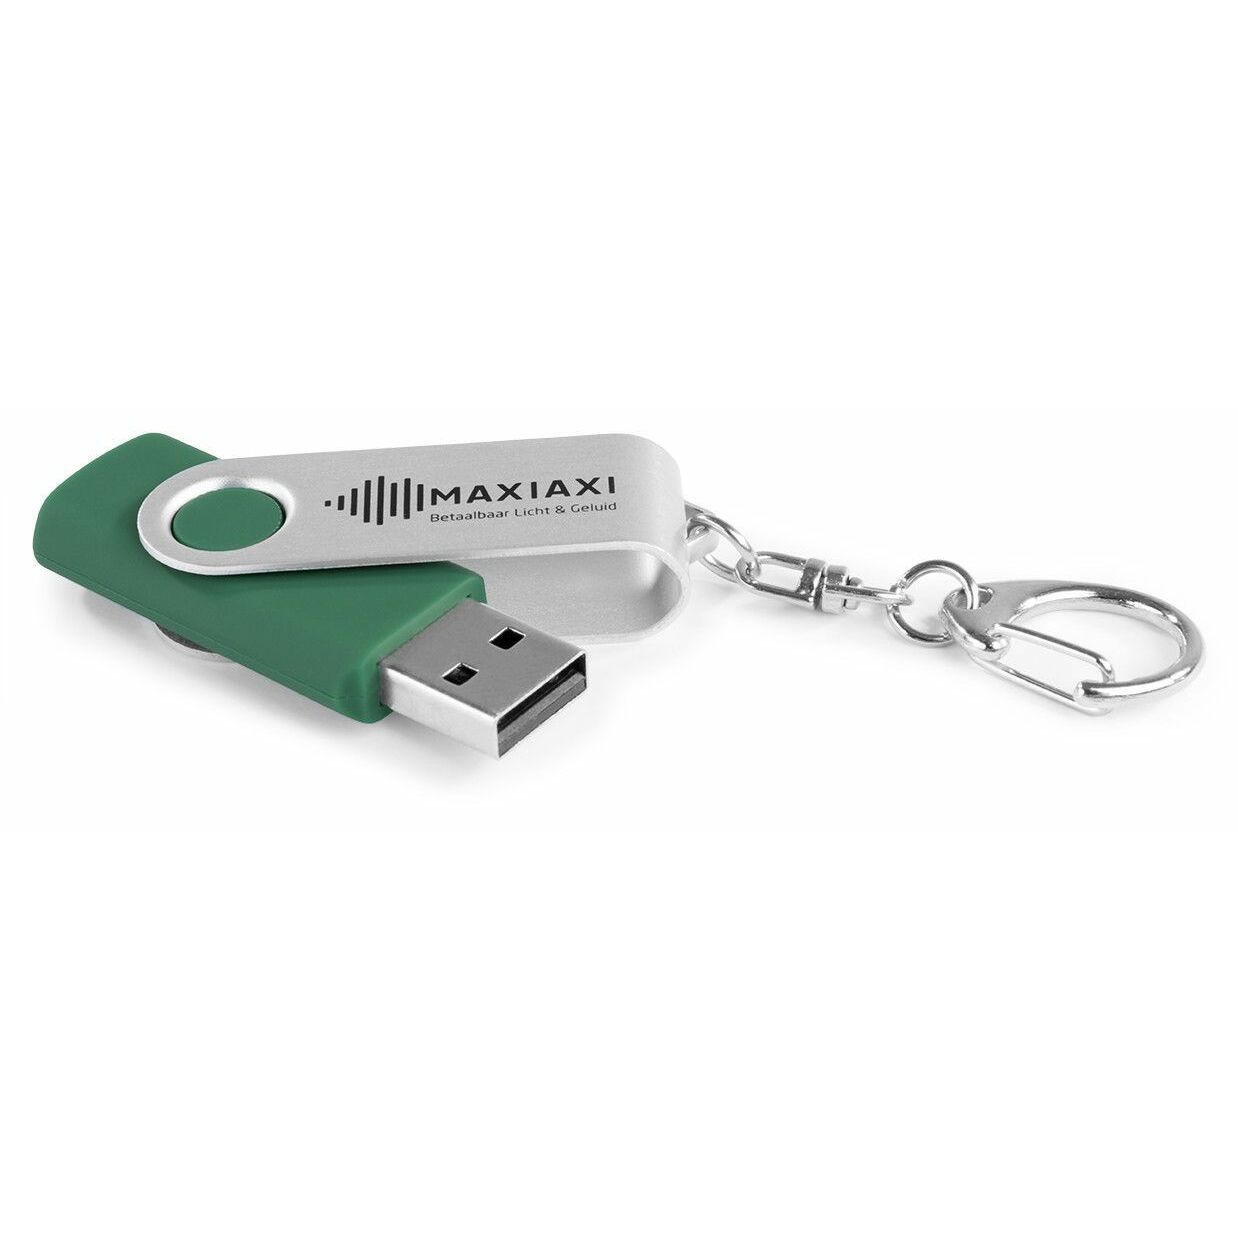 MaxiAxi USB stick 16GB voor USB mp3 kopen?